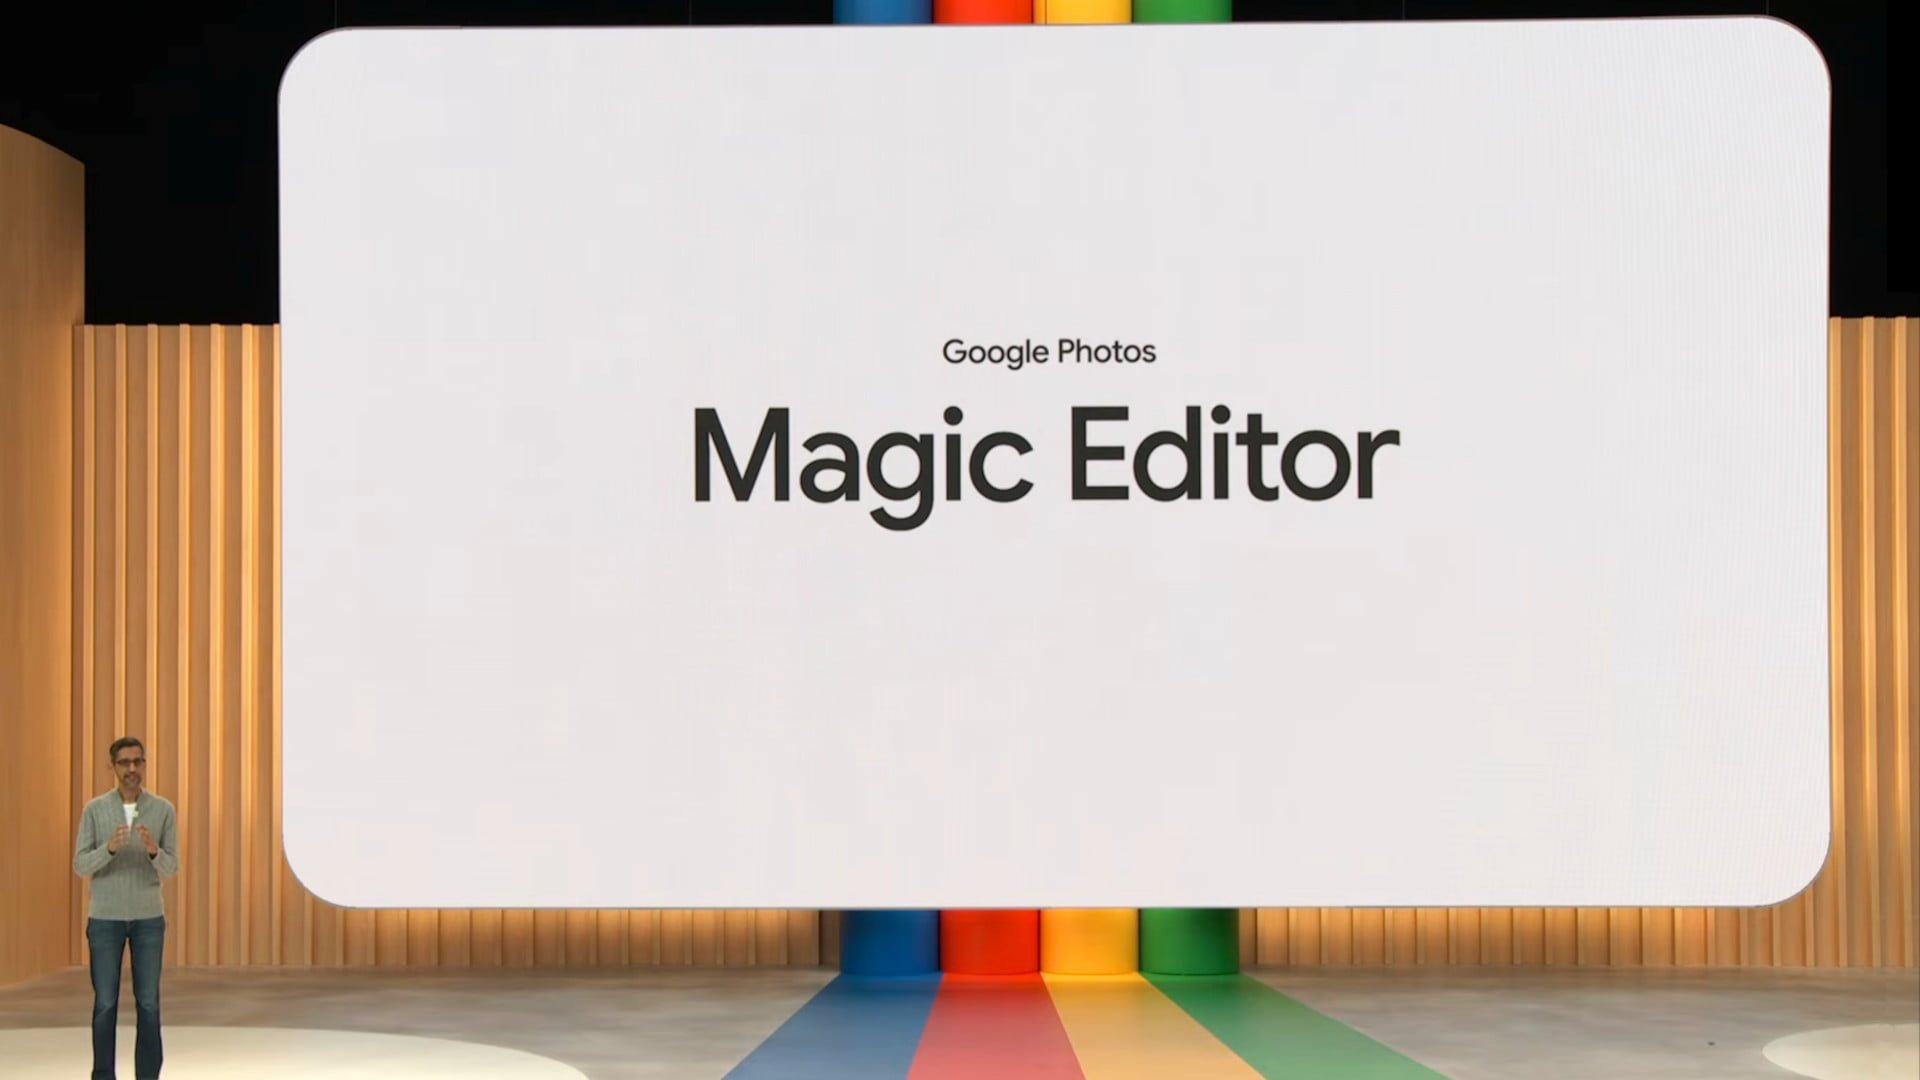 Magic Editor i Google Fotos kan ikke redigere ansigter, dokumenter eller store objekter